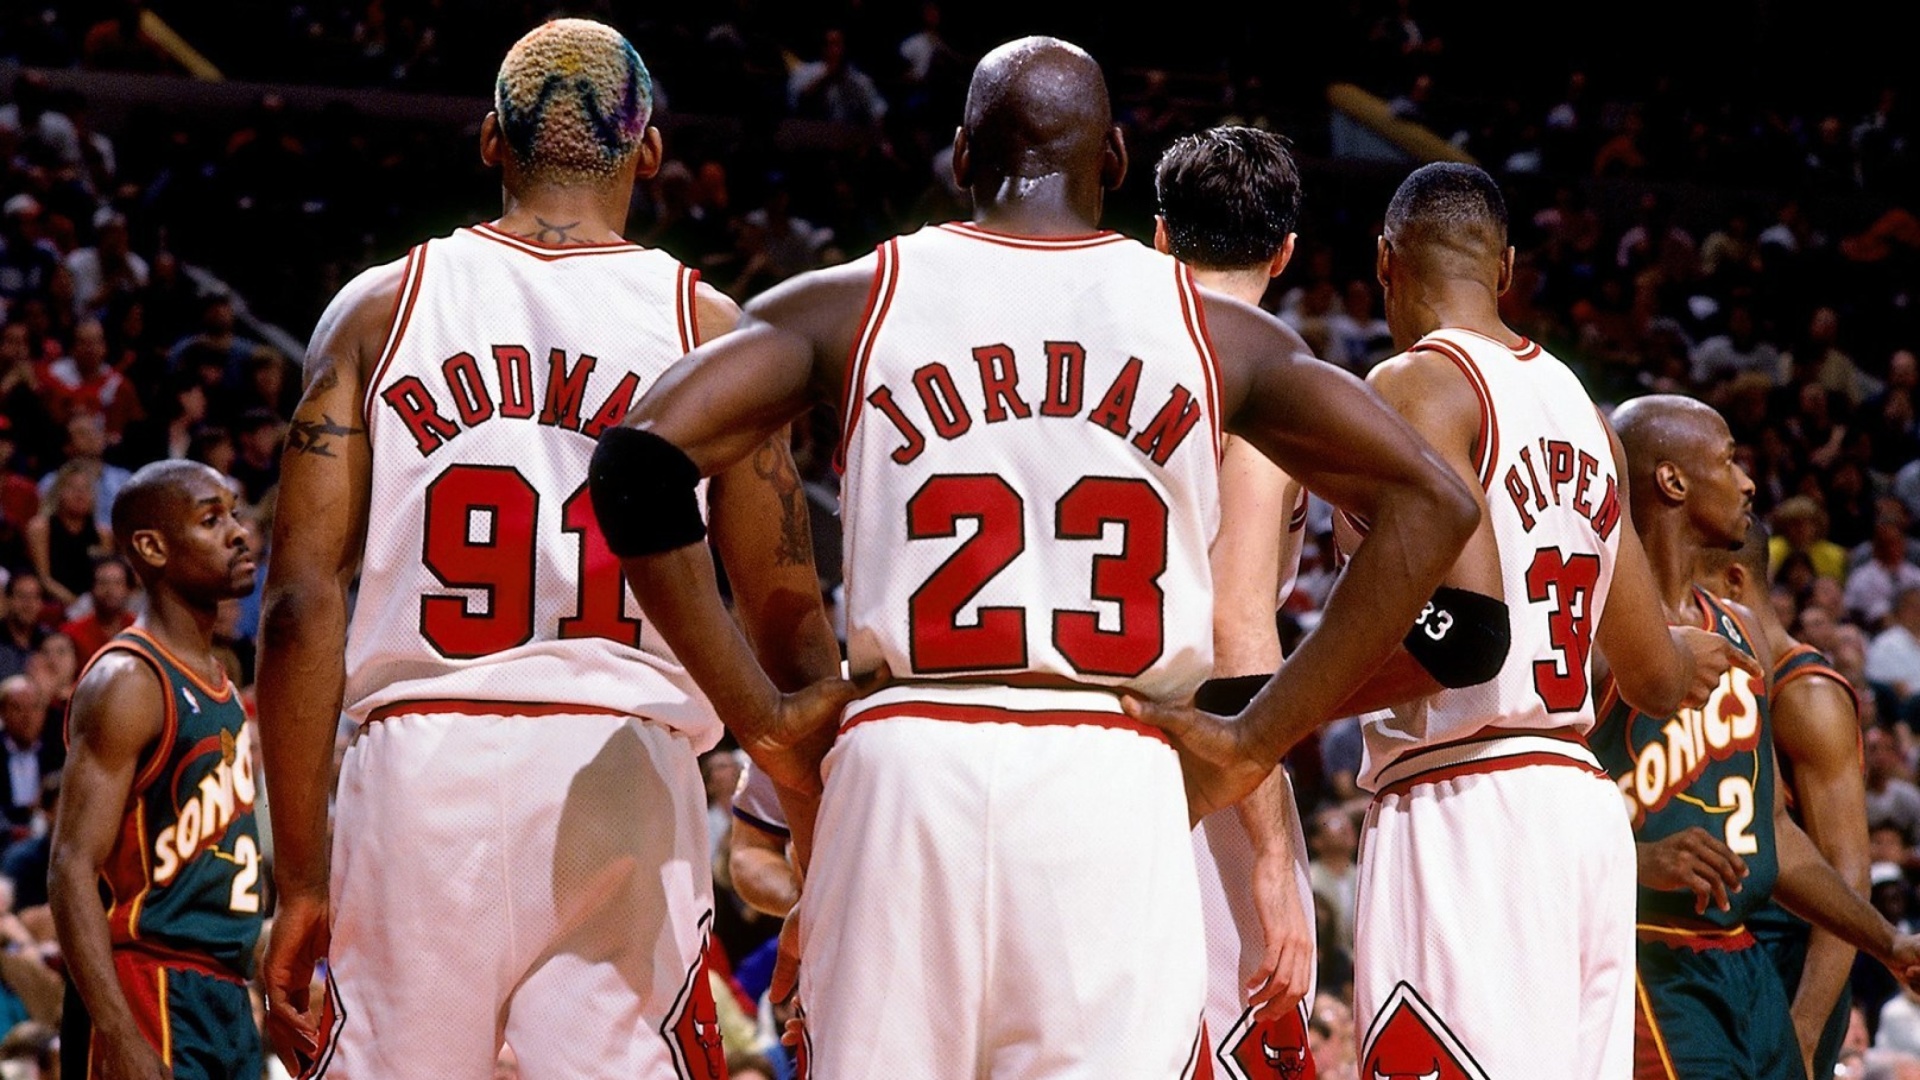 Das Chicago Bulls with Jordan, Pippen, Rodman Wallpaper 1920x1080